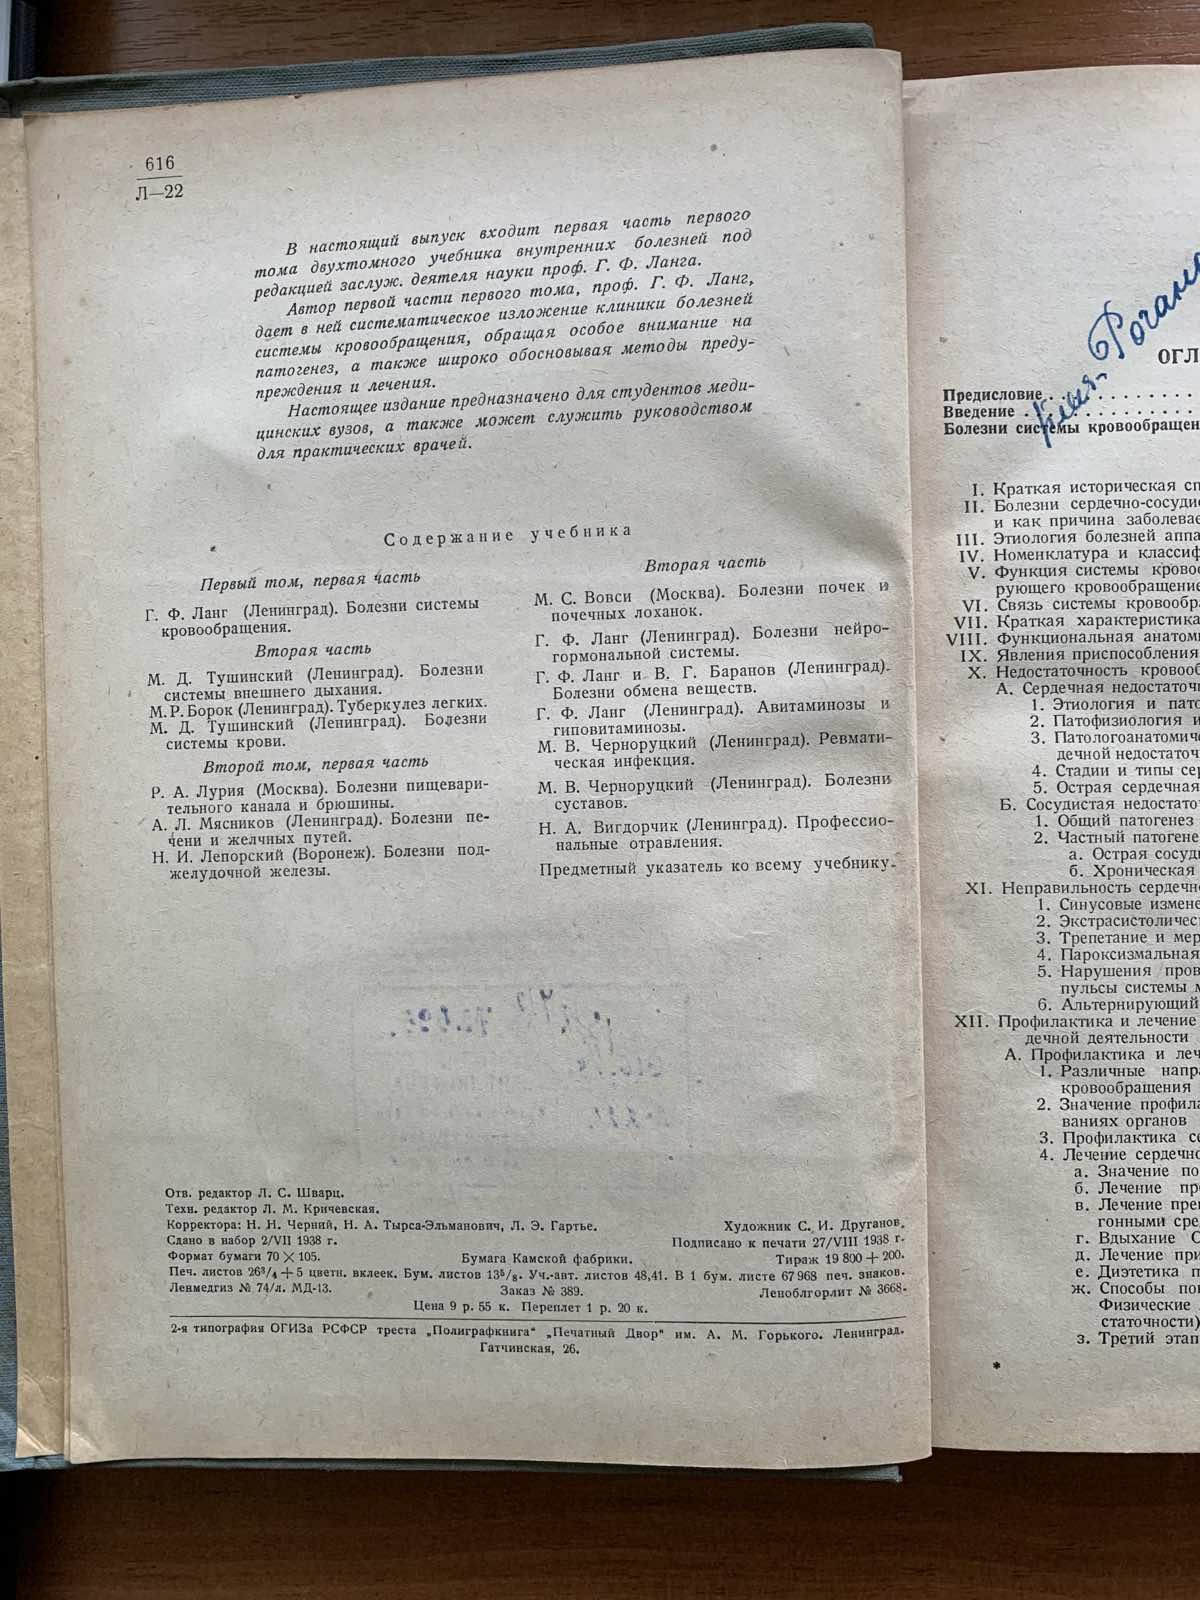 Учебник внутренних болезней Г.Ф.Ланг МЕДГИЗ 1938 год